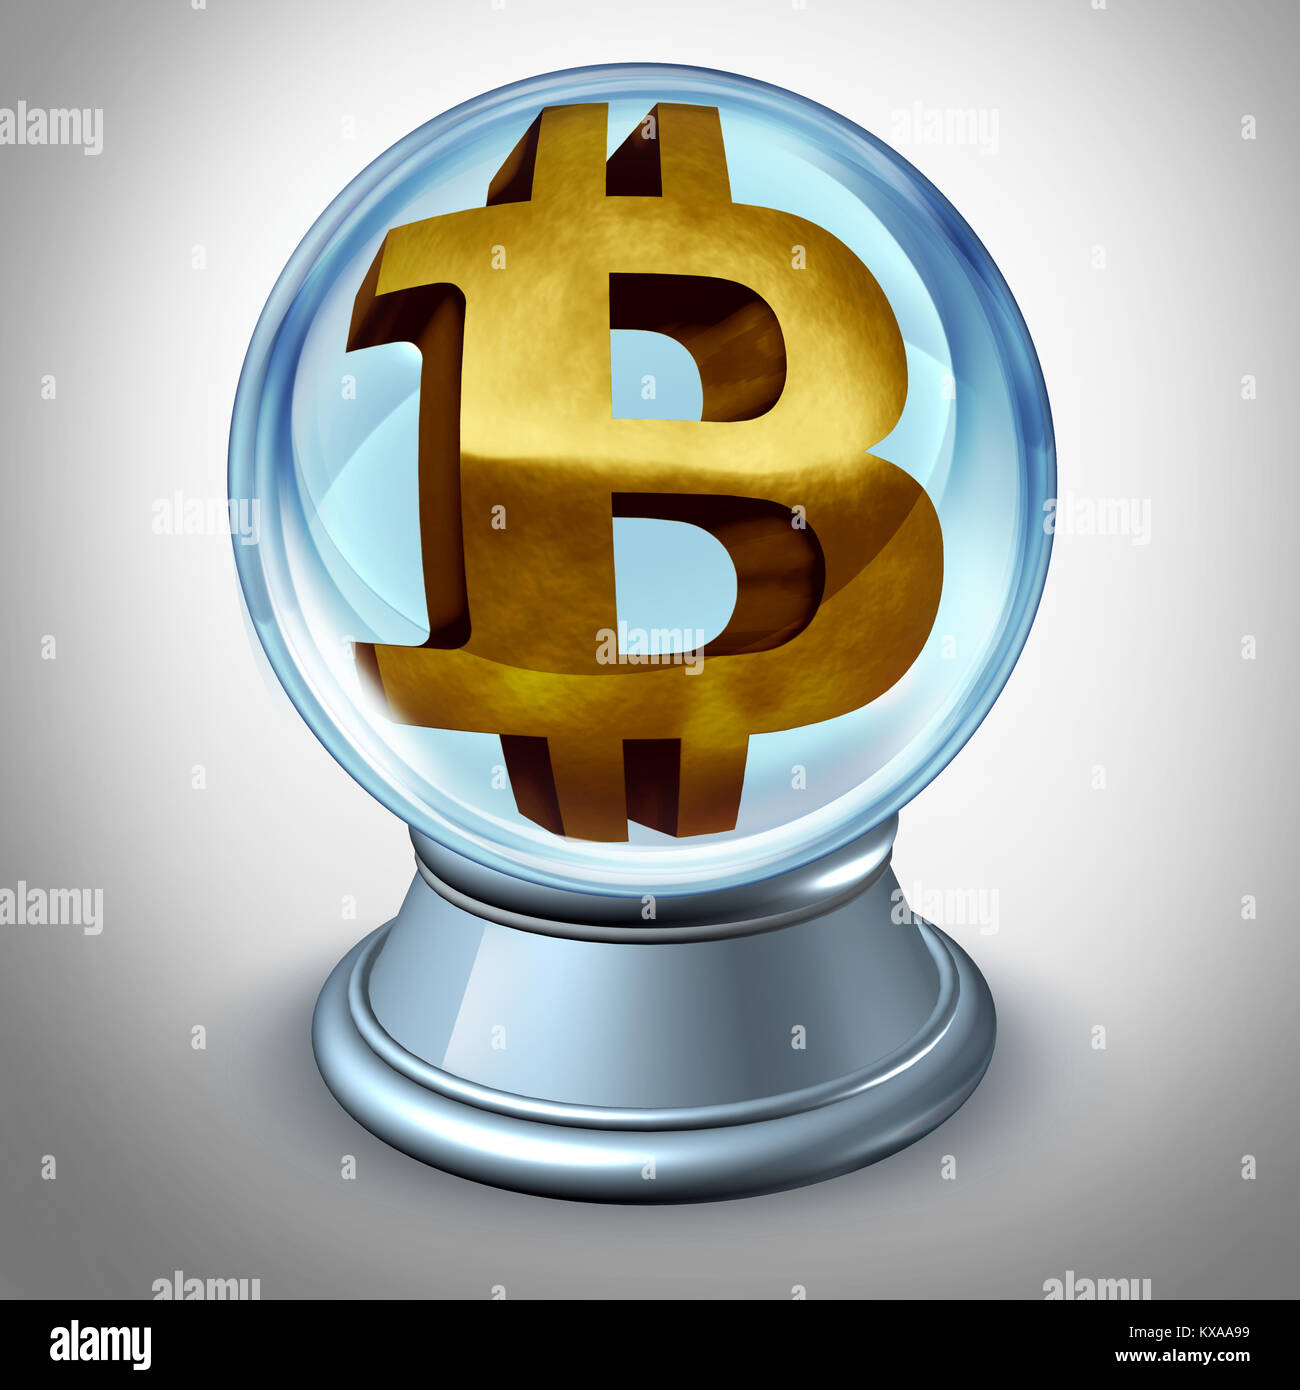 Bitcoin futuro e cryptocurrency di predizione e di predire il valore di valuta digitale come un simbolo finanziaria all'interno di una sfera crystall come 3D illustr Foto Stock